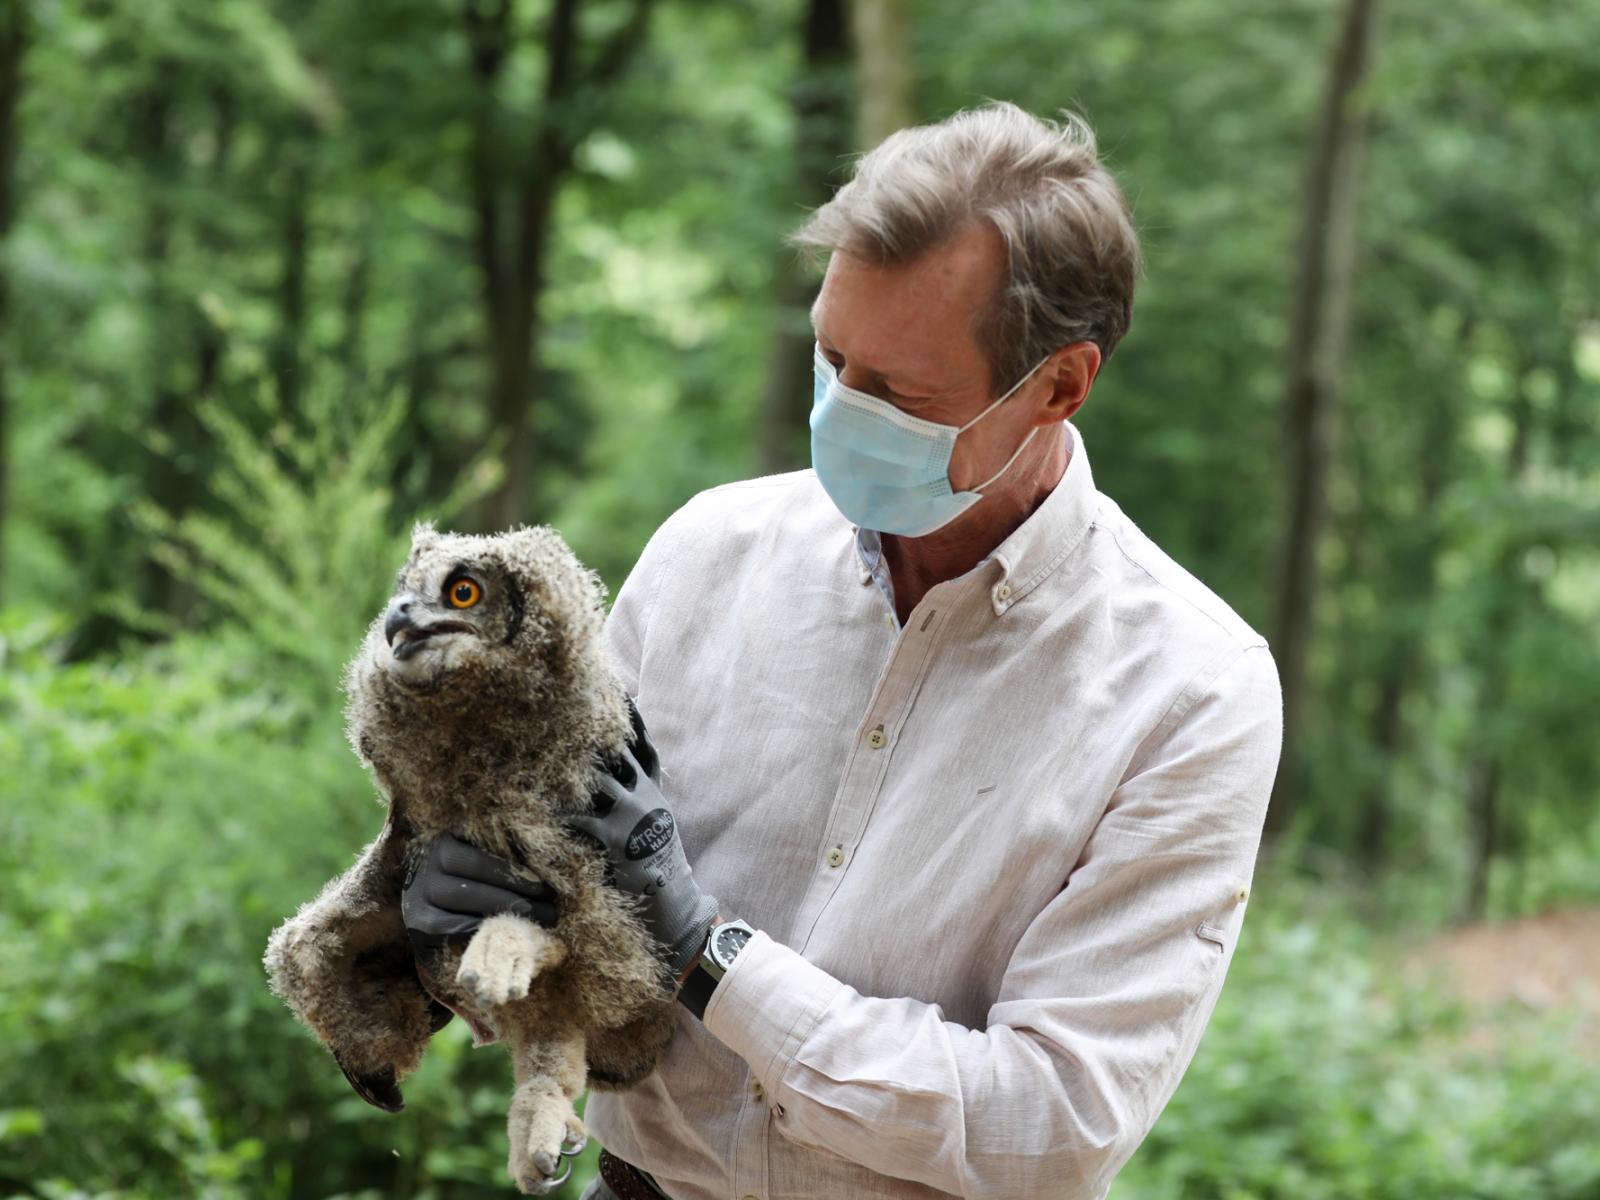 The Grand Duke holds an owl